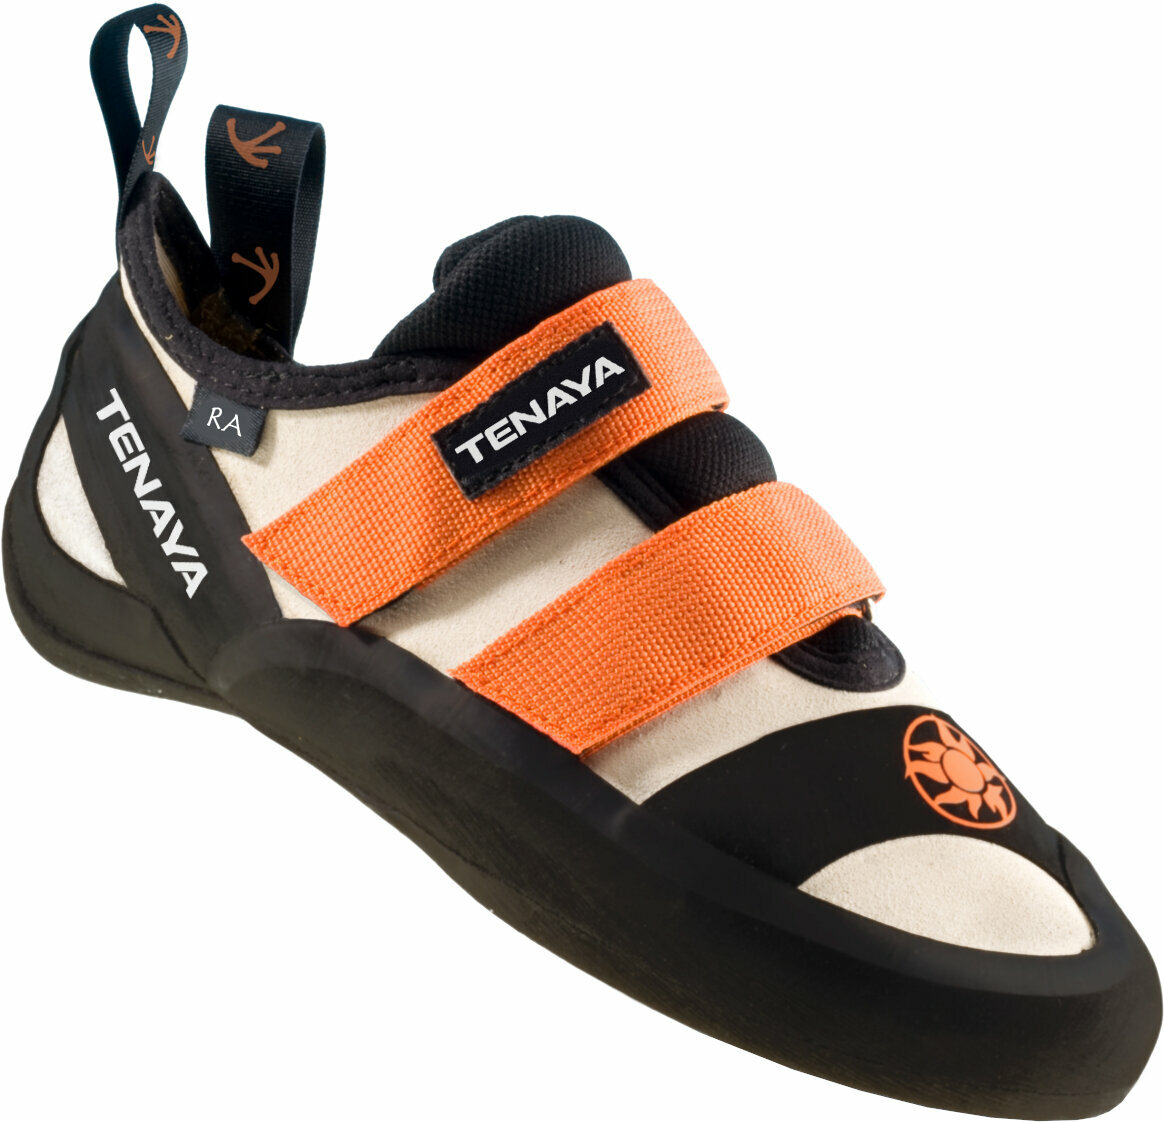 Cipele z penjanje Tenaya Ra Orange 40,7 Cipele z penjanje